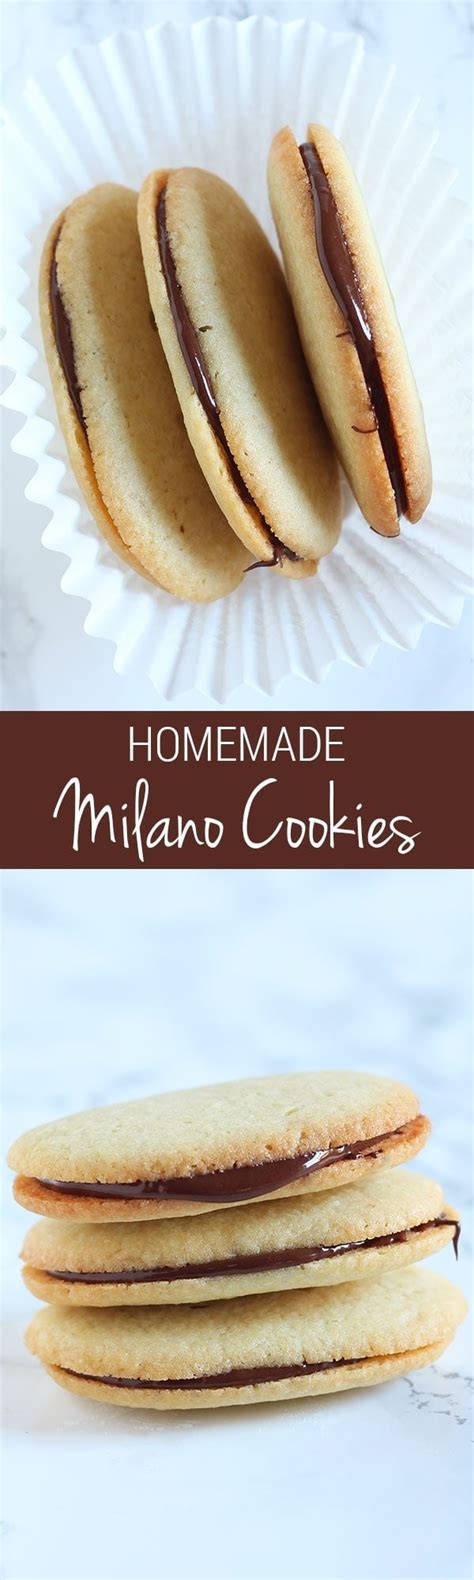 Homemade Milano Cookies Recipe